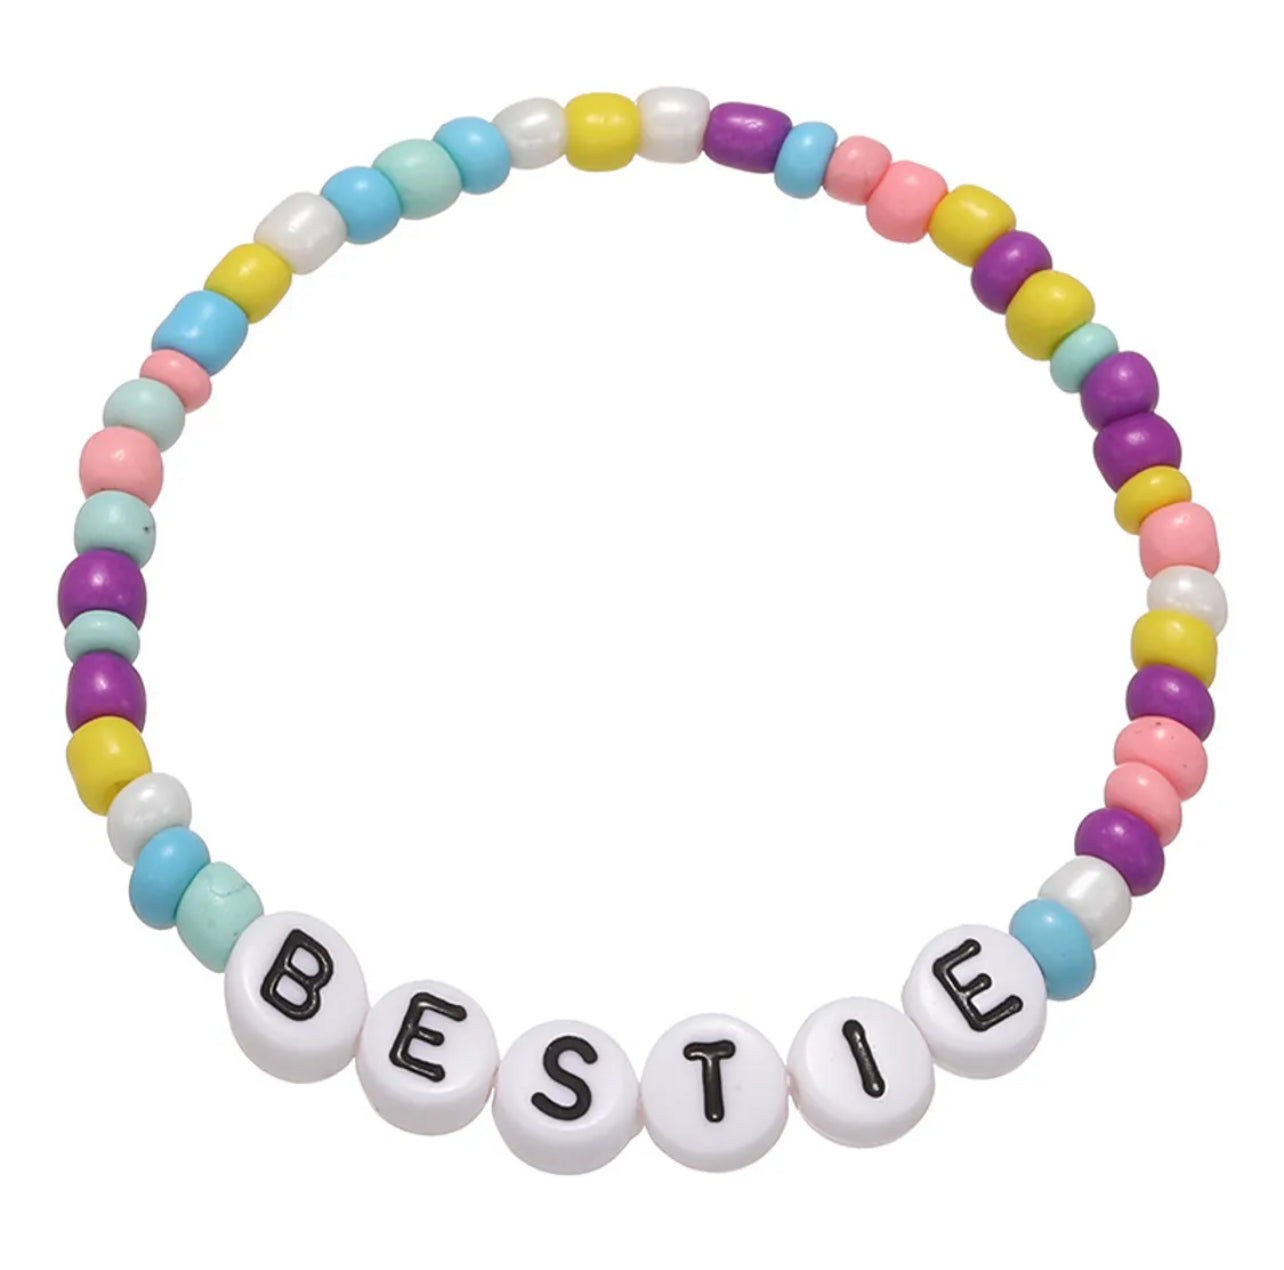 Bestie Word Bracelet